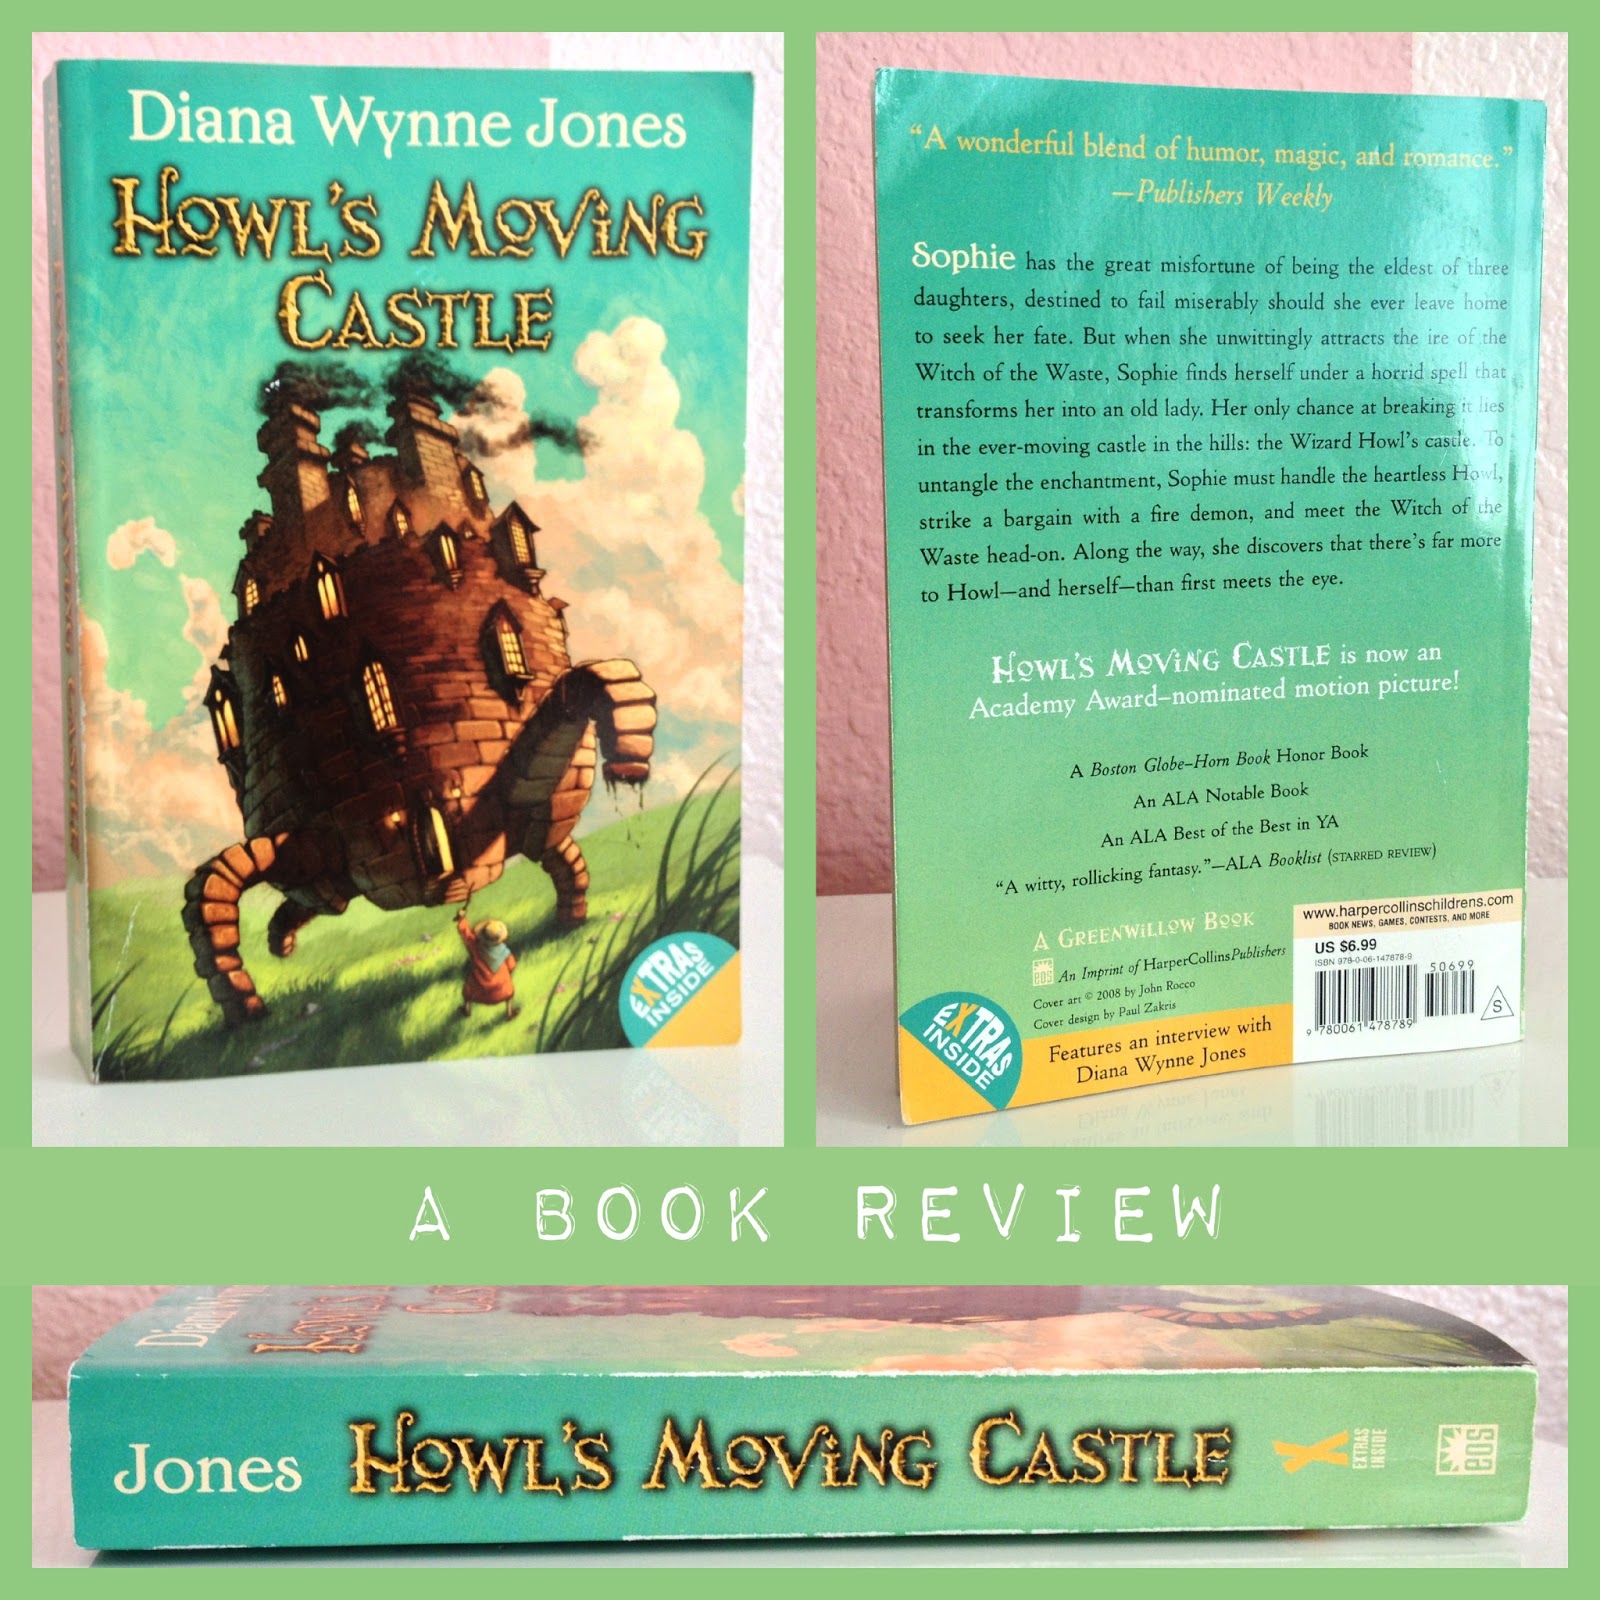 diana wynne jones howl's moving castle ebook